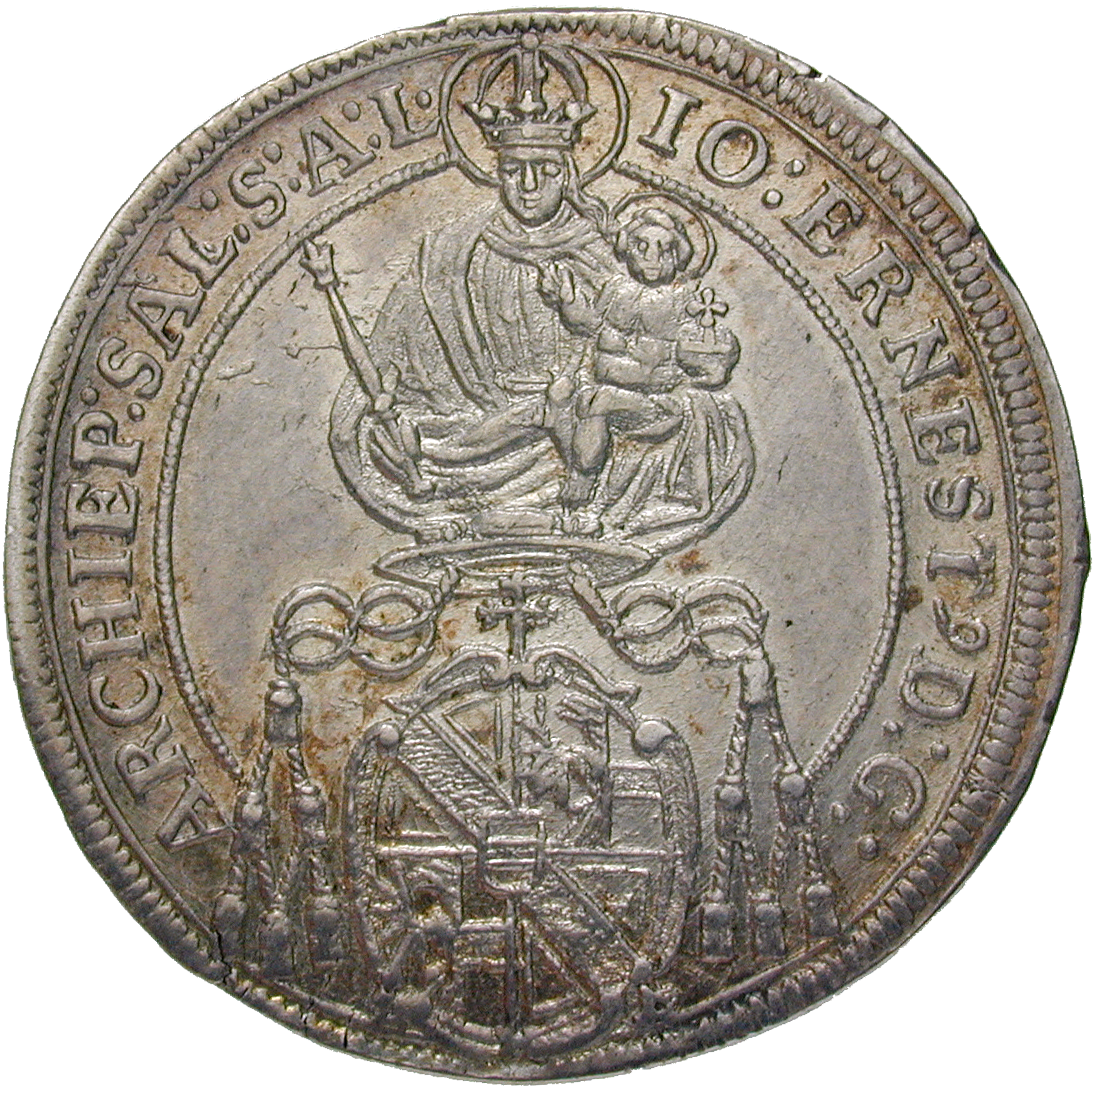 Heiliges Römisches Reich, Fürstbistum Salzburg, Johann Ernst von Thun und Hohenstein, 1/4 Taler 1694 (obverse)